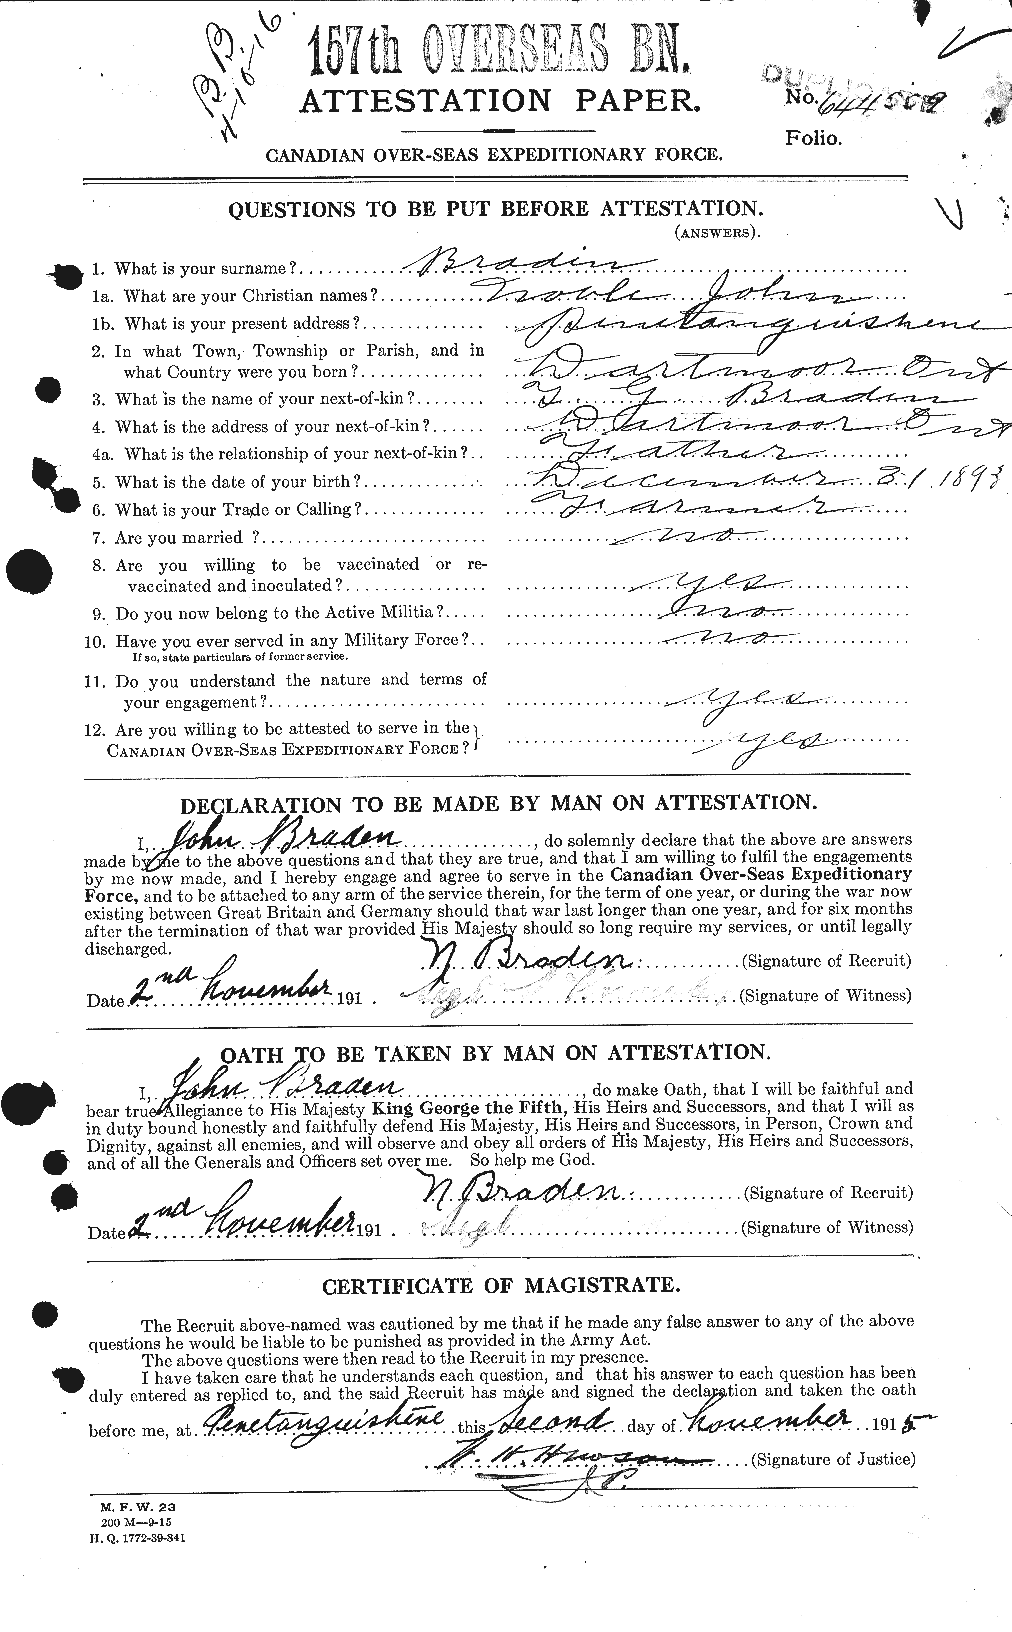 Dossiers du Personnel de la Première Guerre mondiale - CEC 256868a